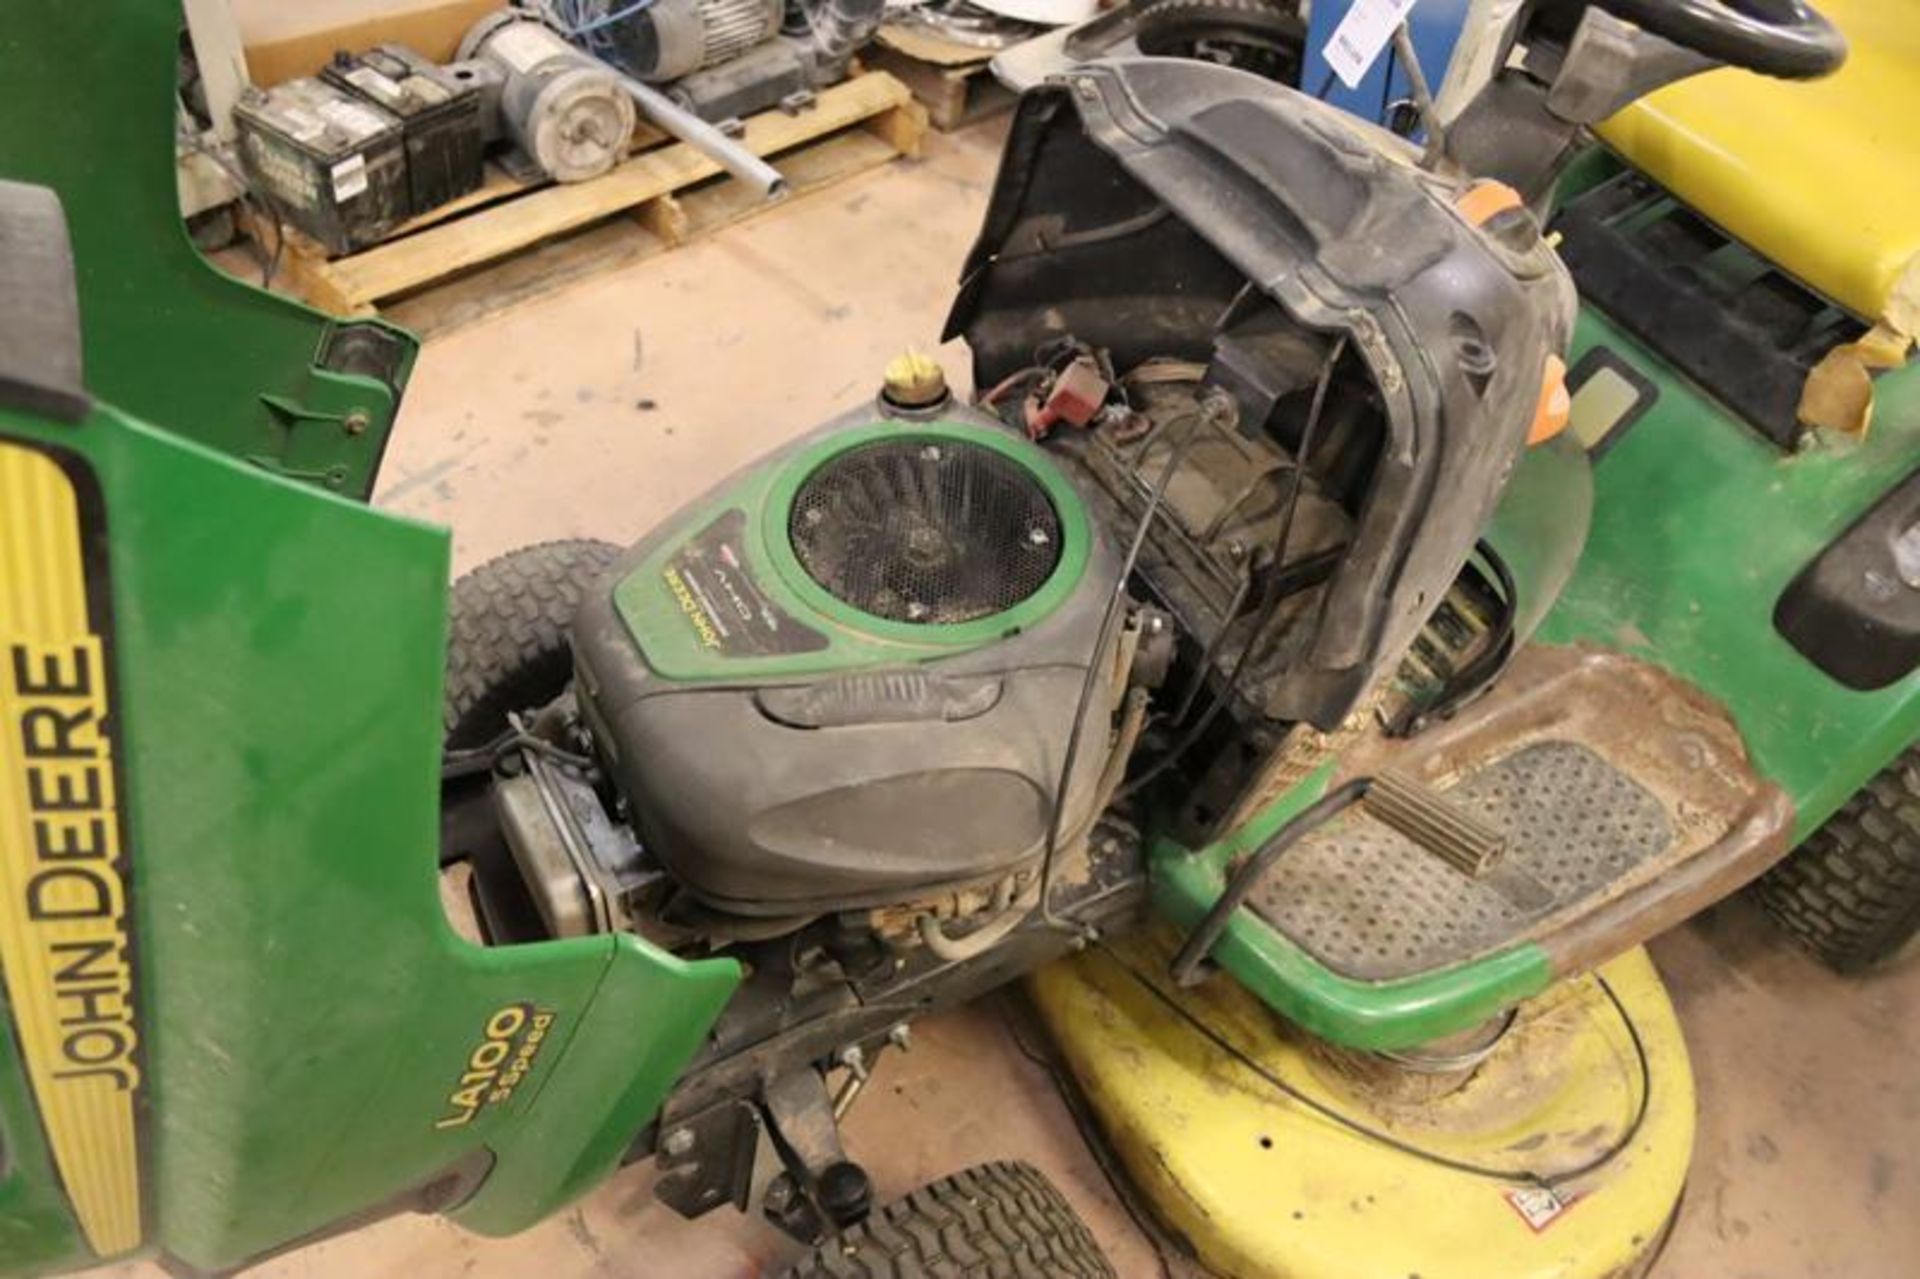 John Deere Lawn Tractor LA-100, 5-Speed, Battery Dead - Image 3 of 3